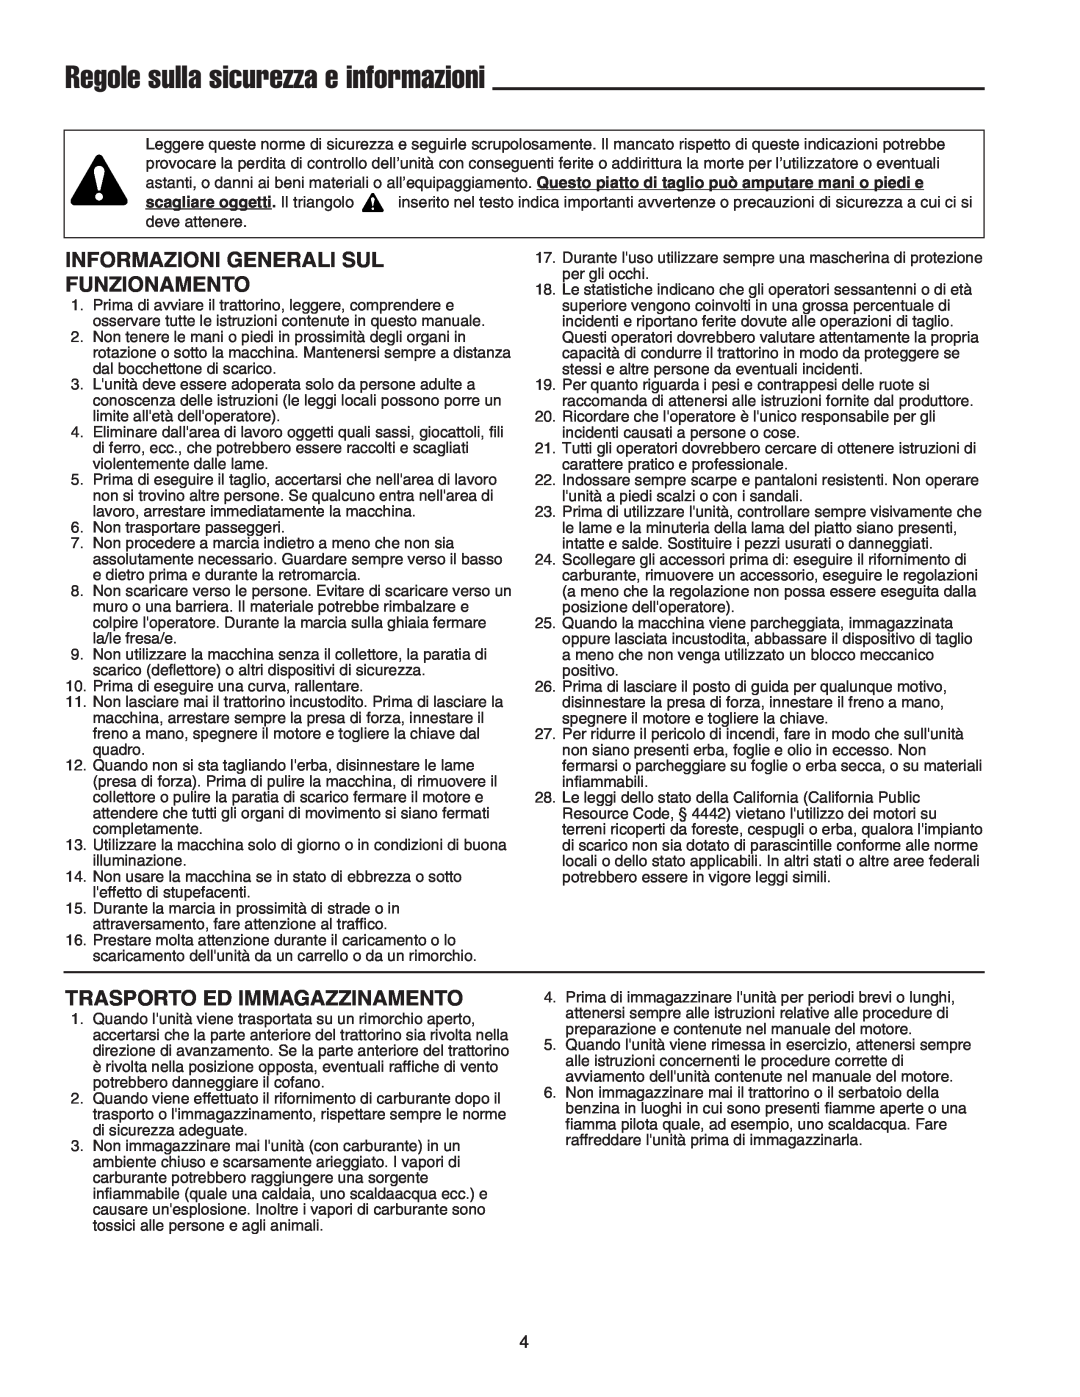 Briggs & Stratton Printer instruction sheet Informazioni Generali Sul Funzionamento, Trasporto Ed Immagazzinamento 